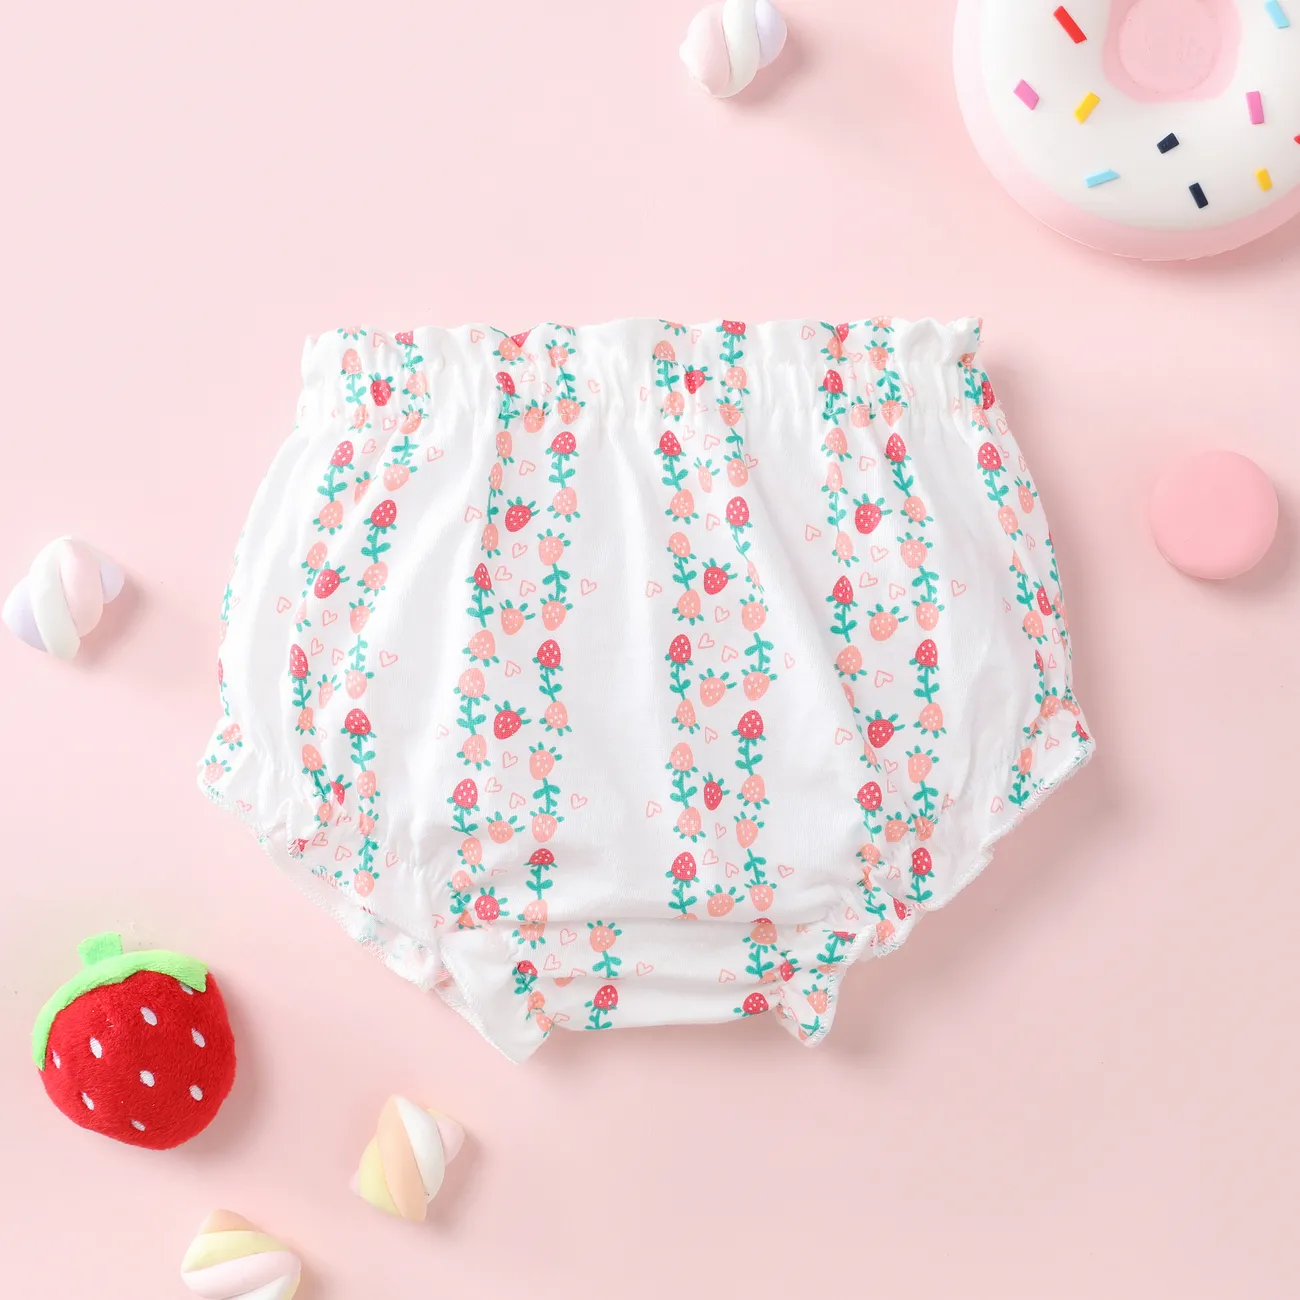 Kindliches Erdbeer-Unterwäsche-Set, 1-teilig, Baumwolle, für Kinder Mädchen rosa big image 1